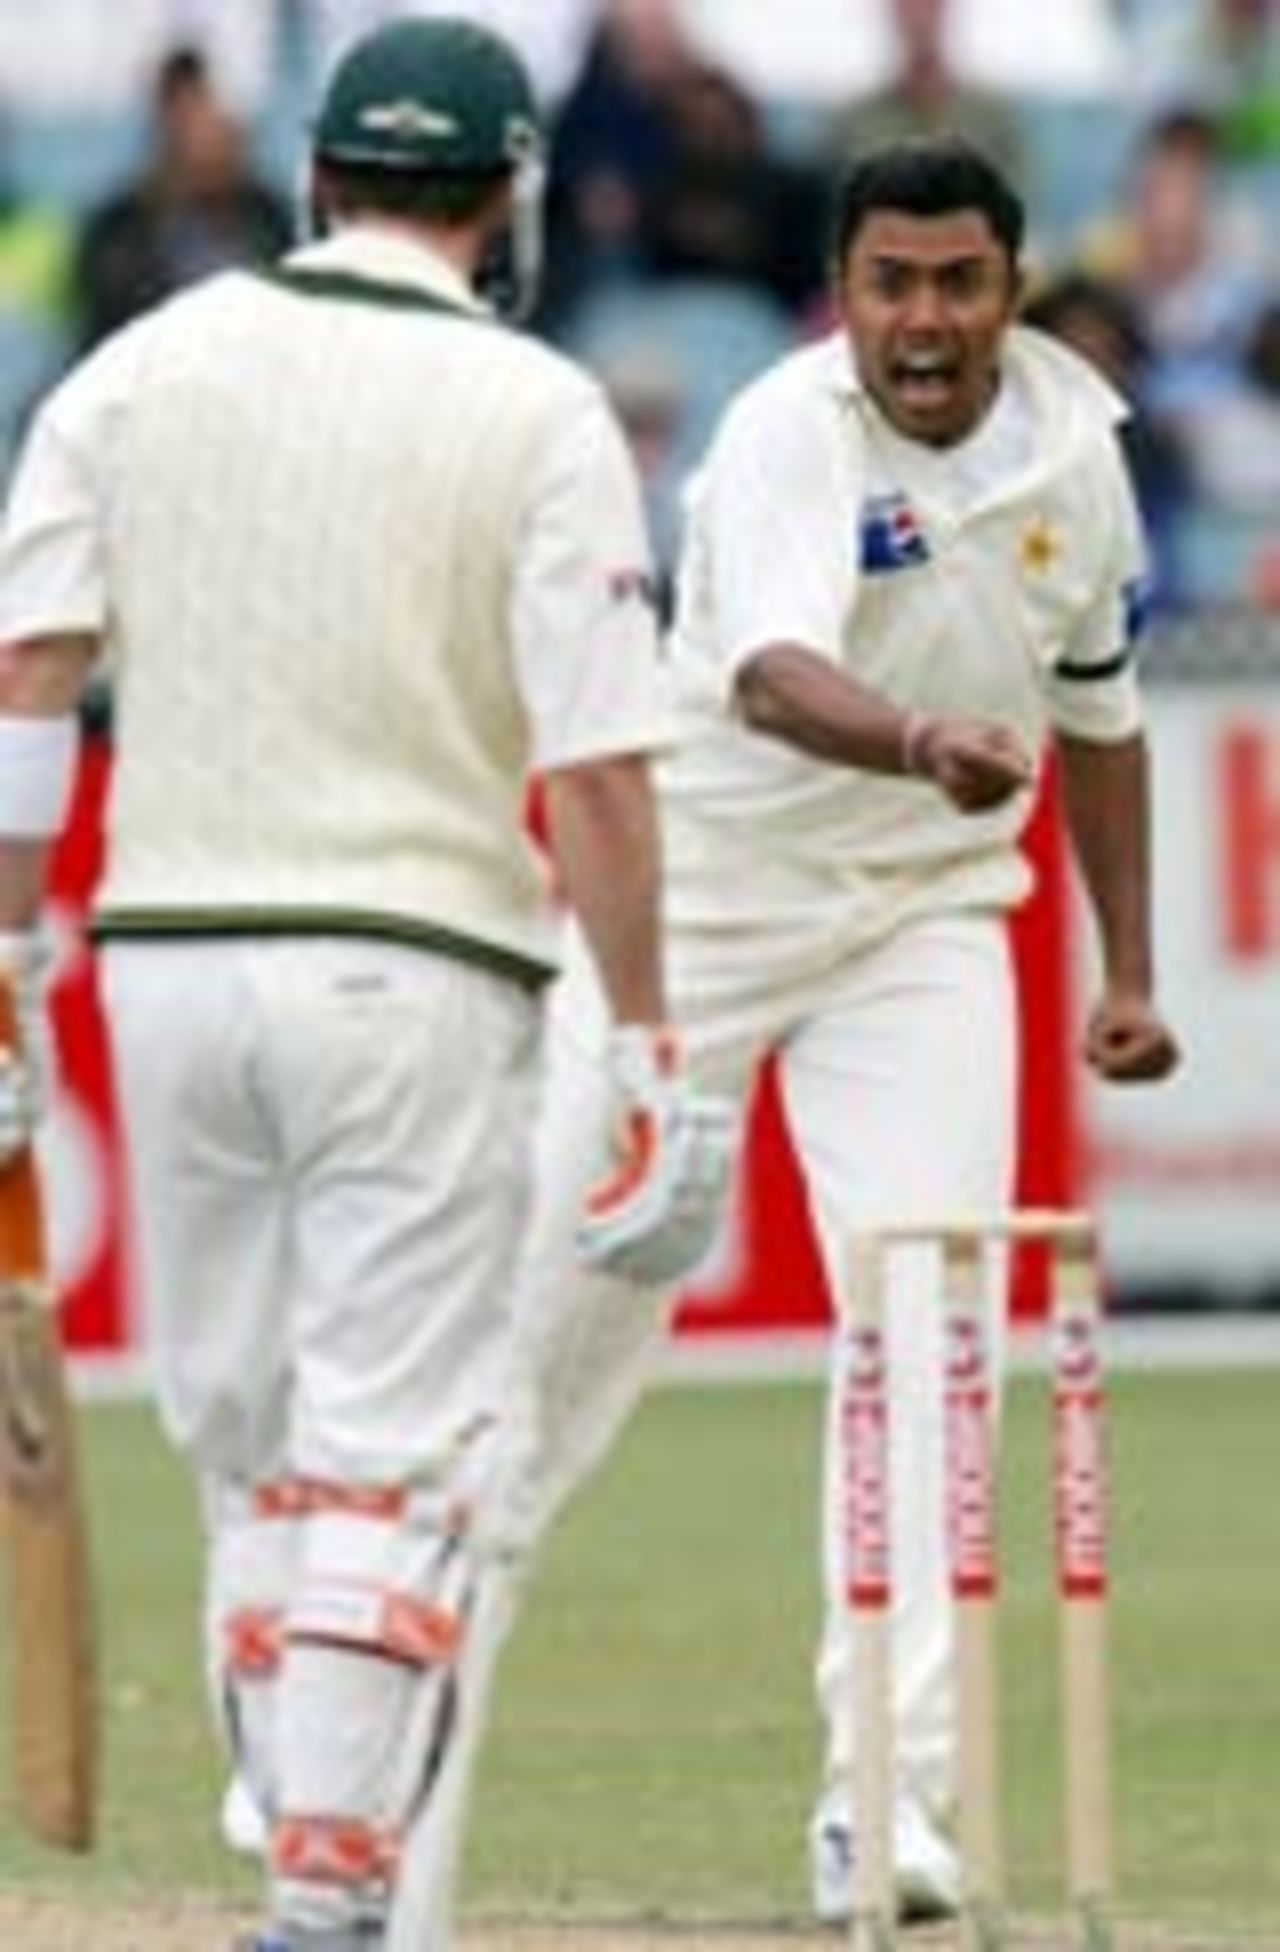 Danish Kaneria thrilled after nailing Damien Martyn, Australia v Pakistan, 2nd Test,  Melbourne, December 27, 2004